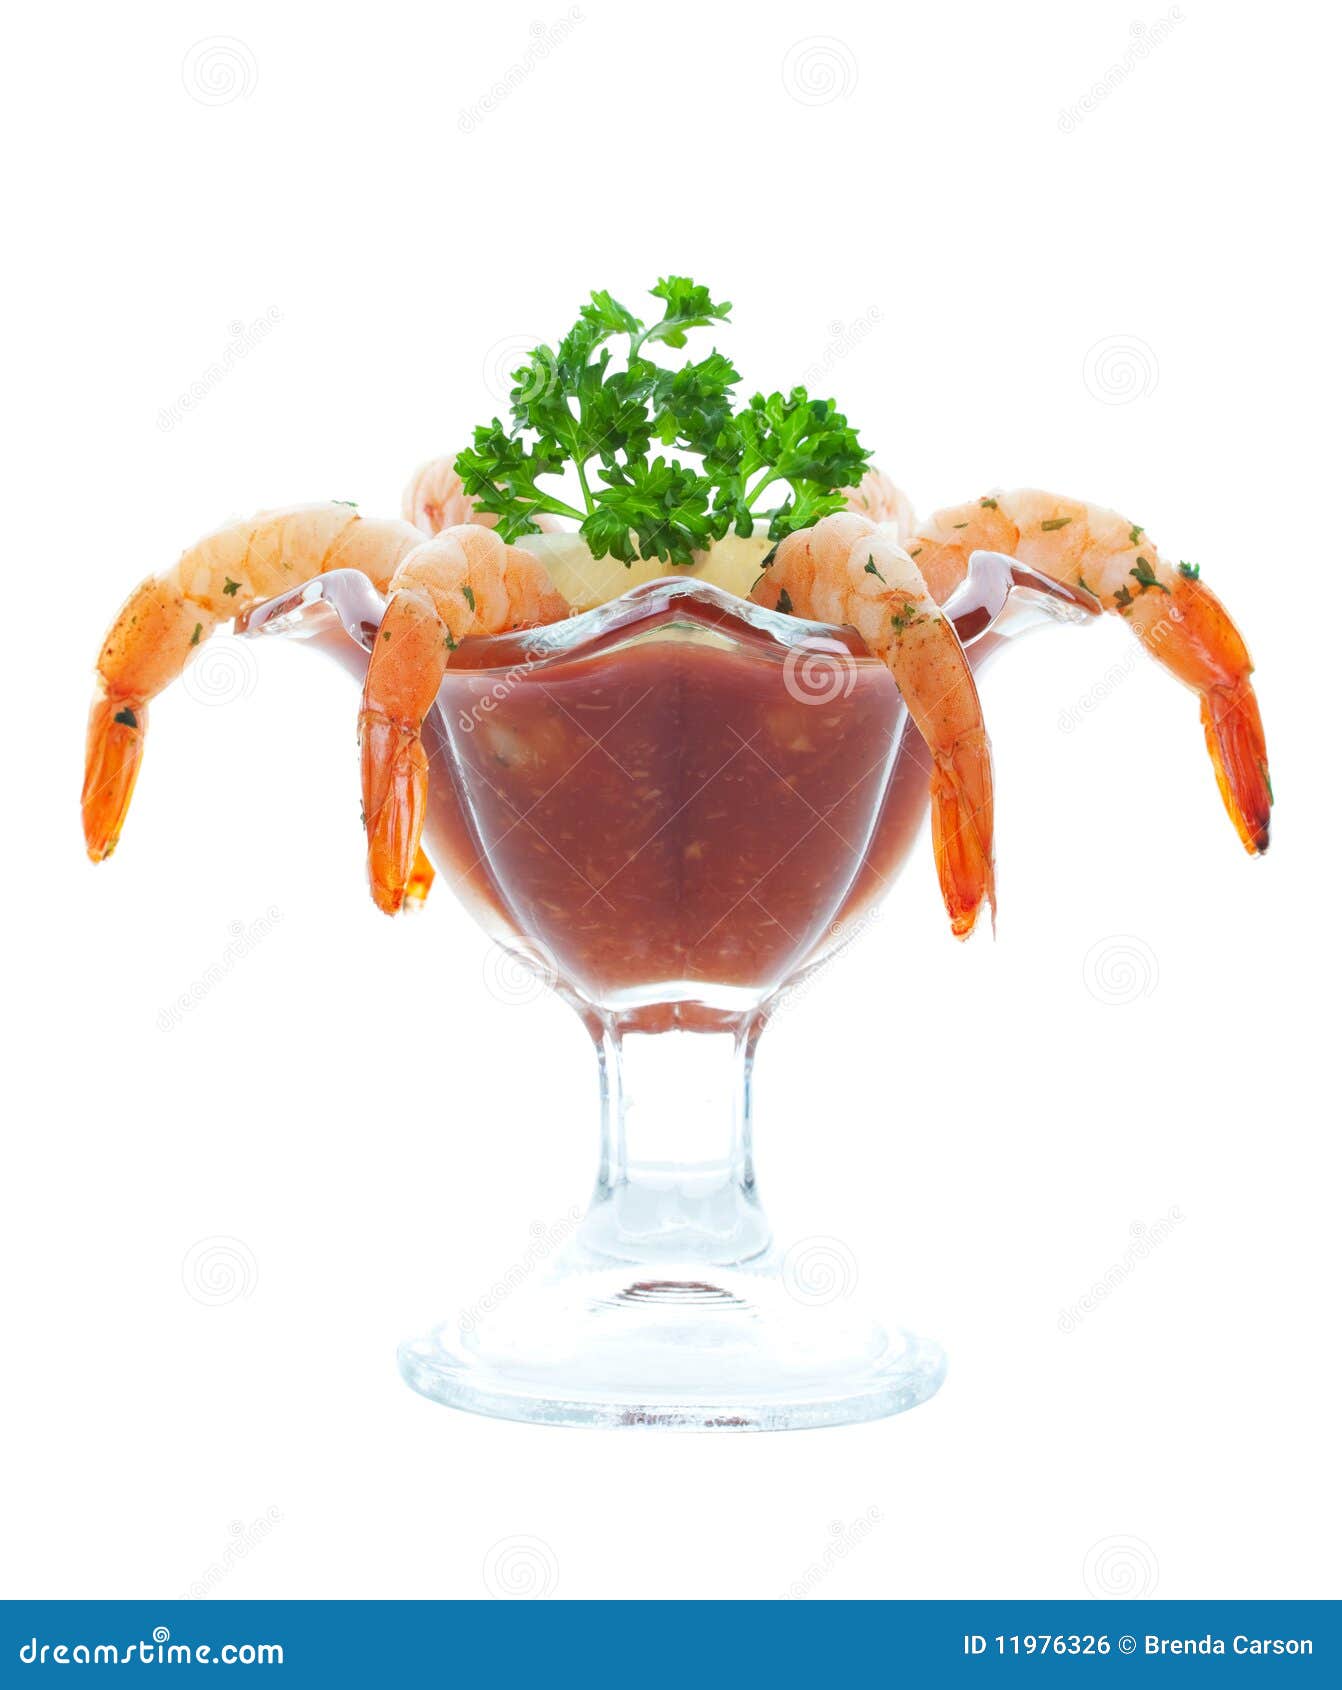 鸡尾酒虾 库存图片. 图片 包括有 烹调, 复杂, 苹果酱, 垂度, 调味汁, 食物, 美食, 可口, 鸡尾酒 - 1688695